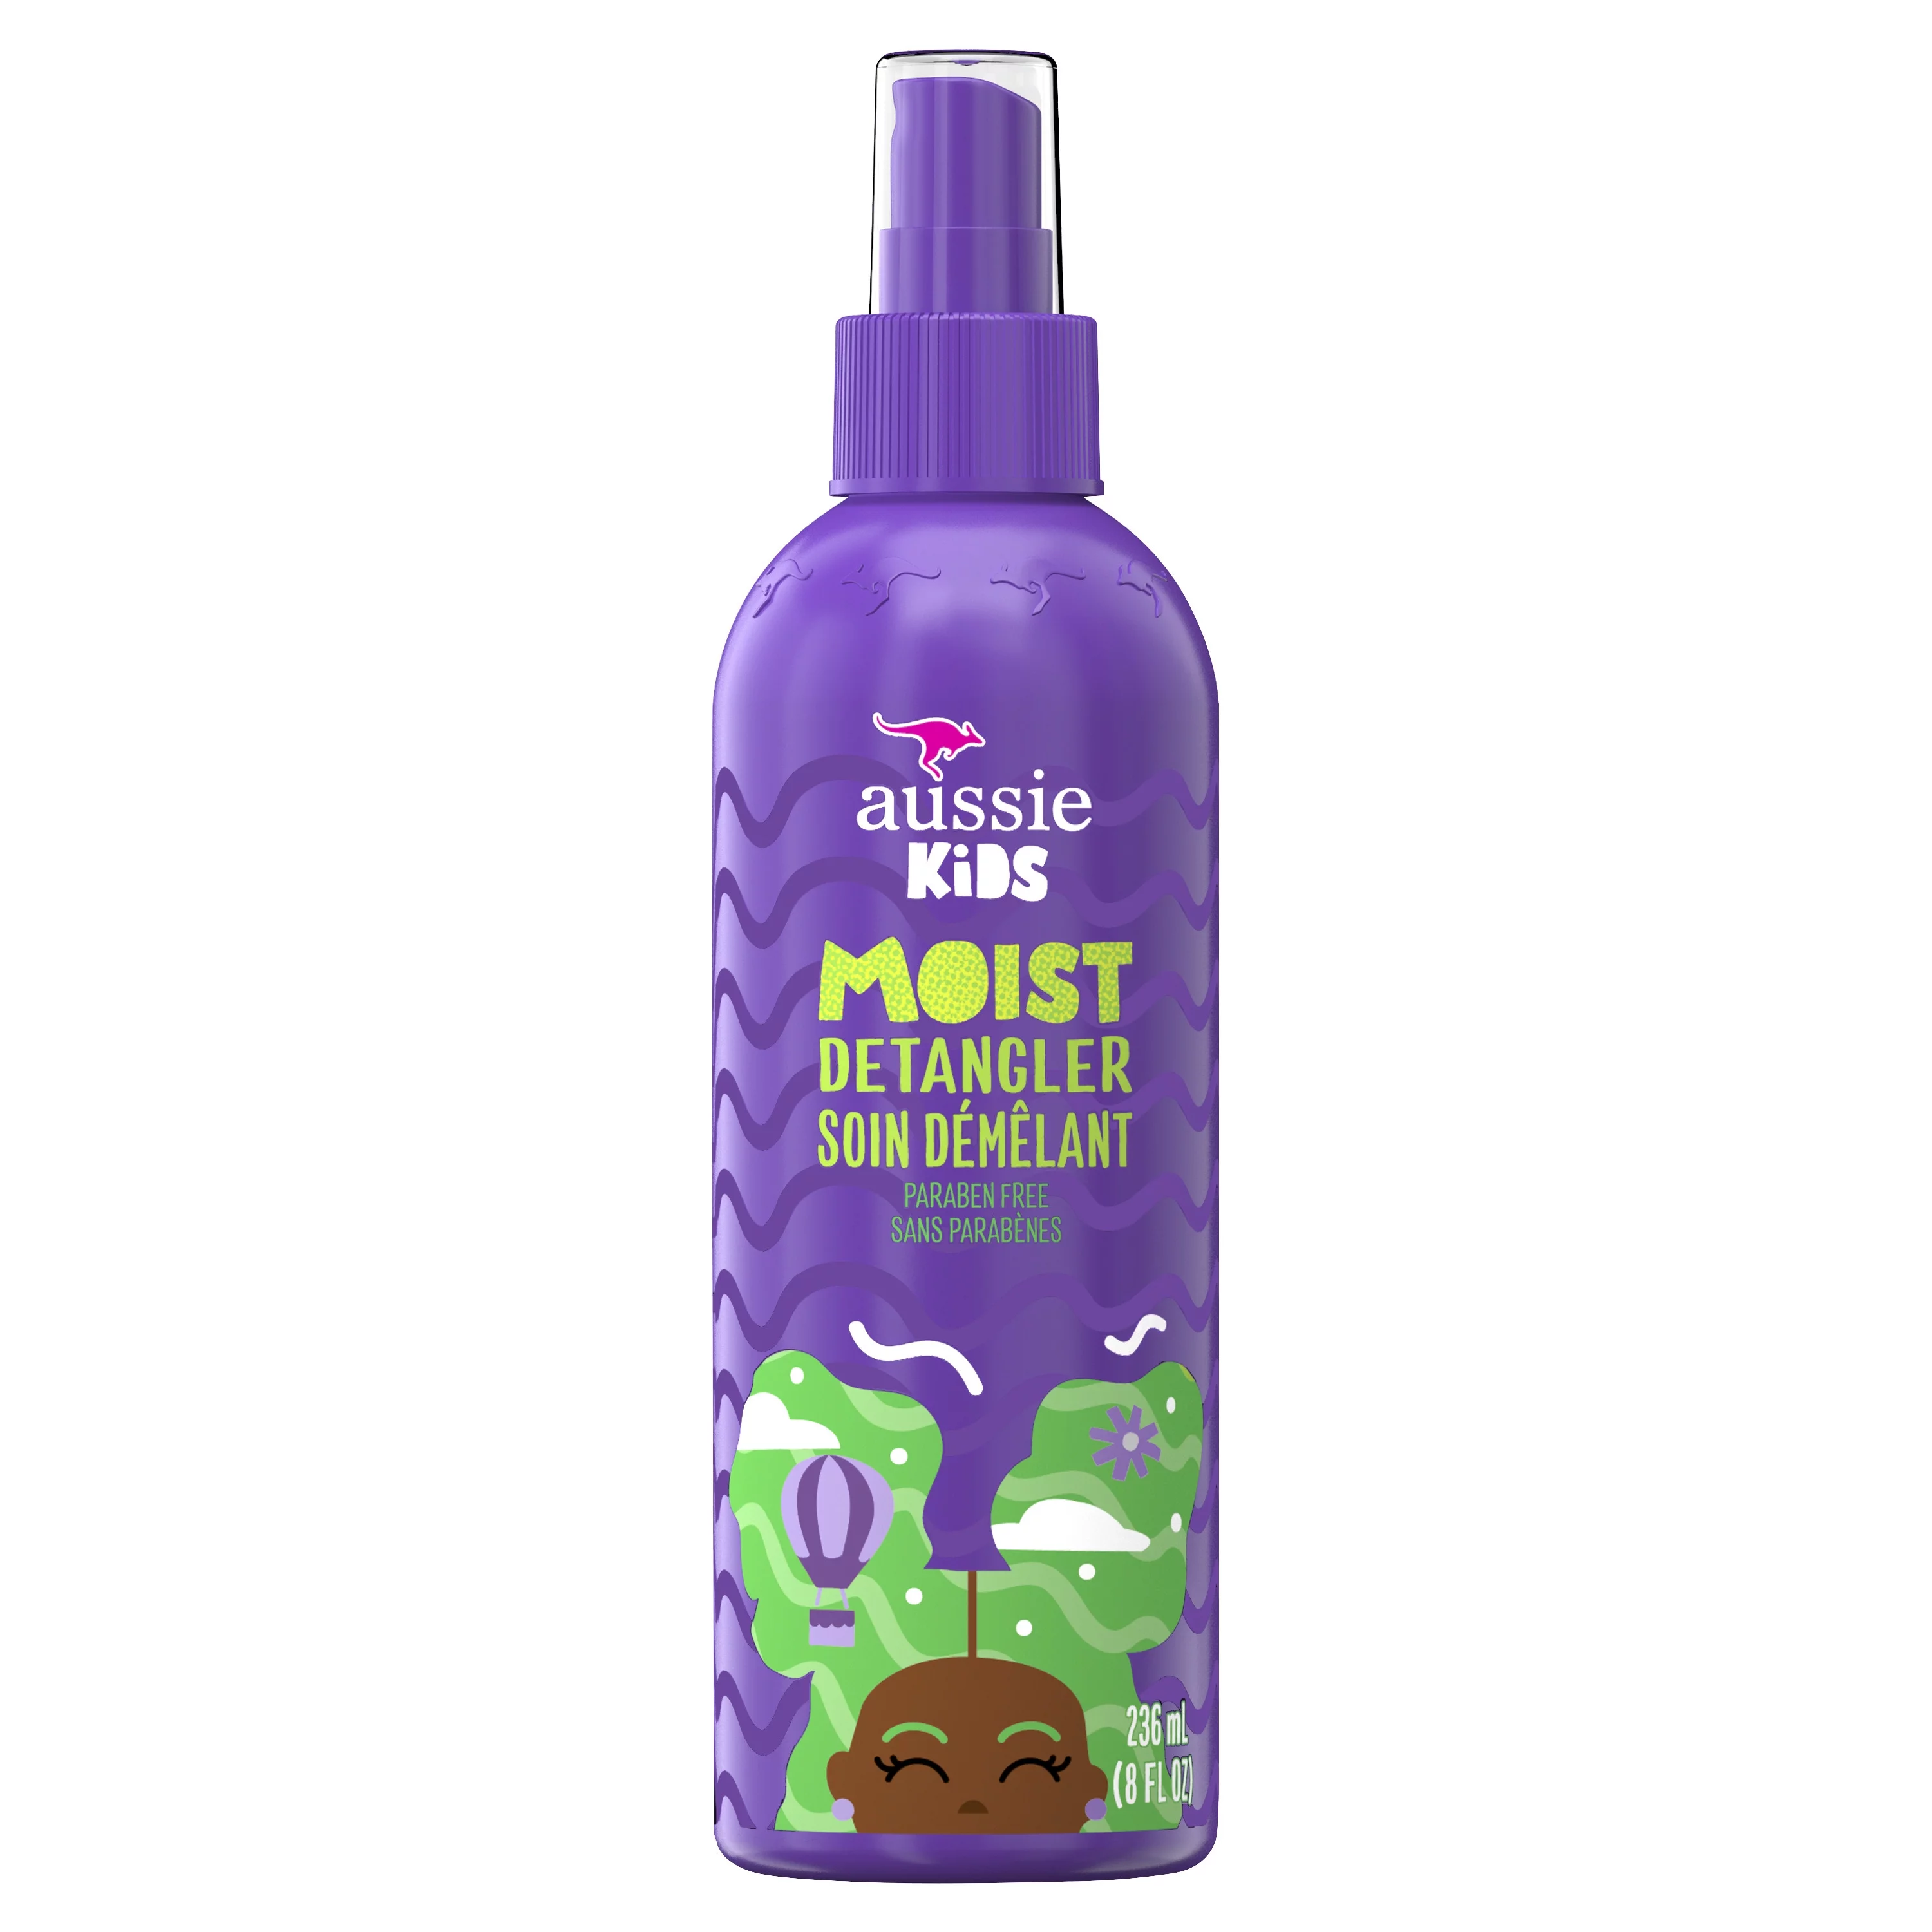 Aussie Kids Moist Detangler Spray for Kids, 8 fl oz